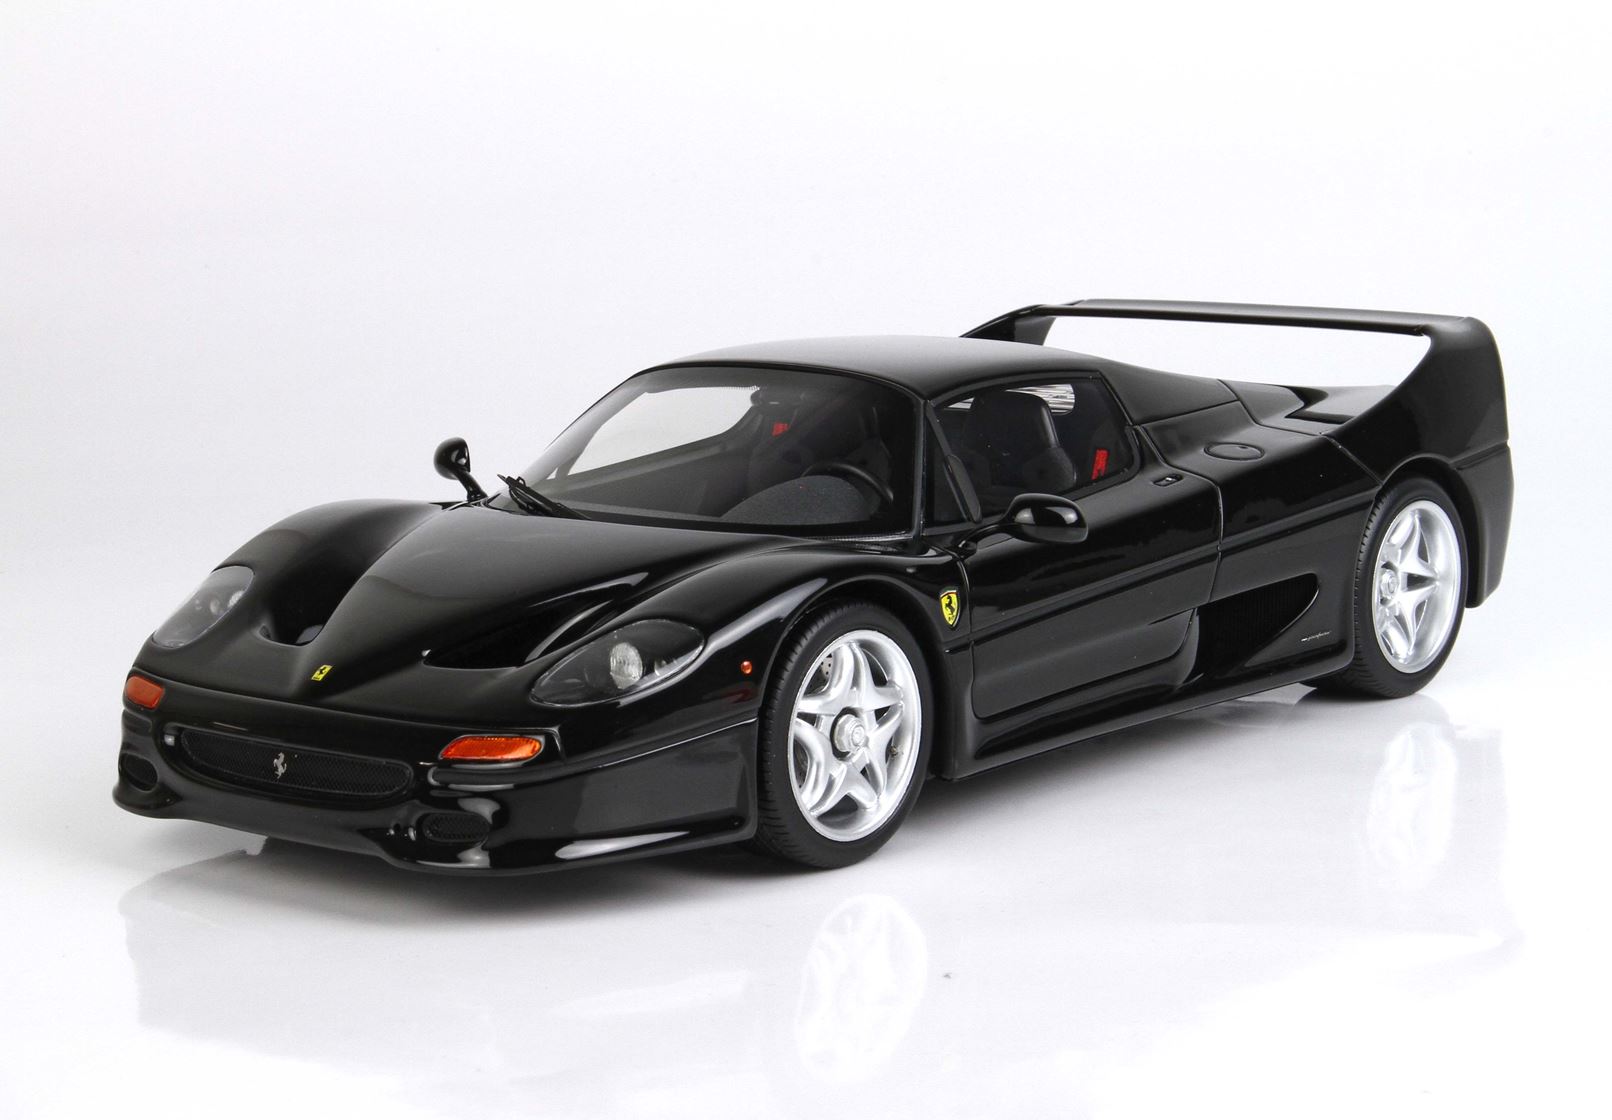 BBR Ferrari F50 escala 1:18 Negro